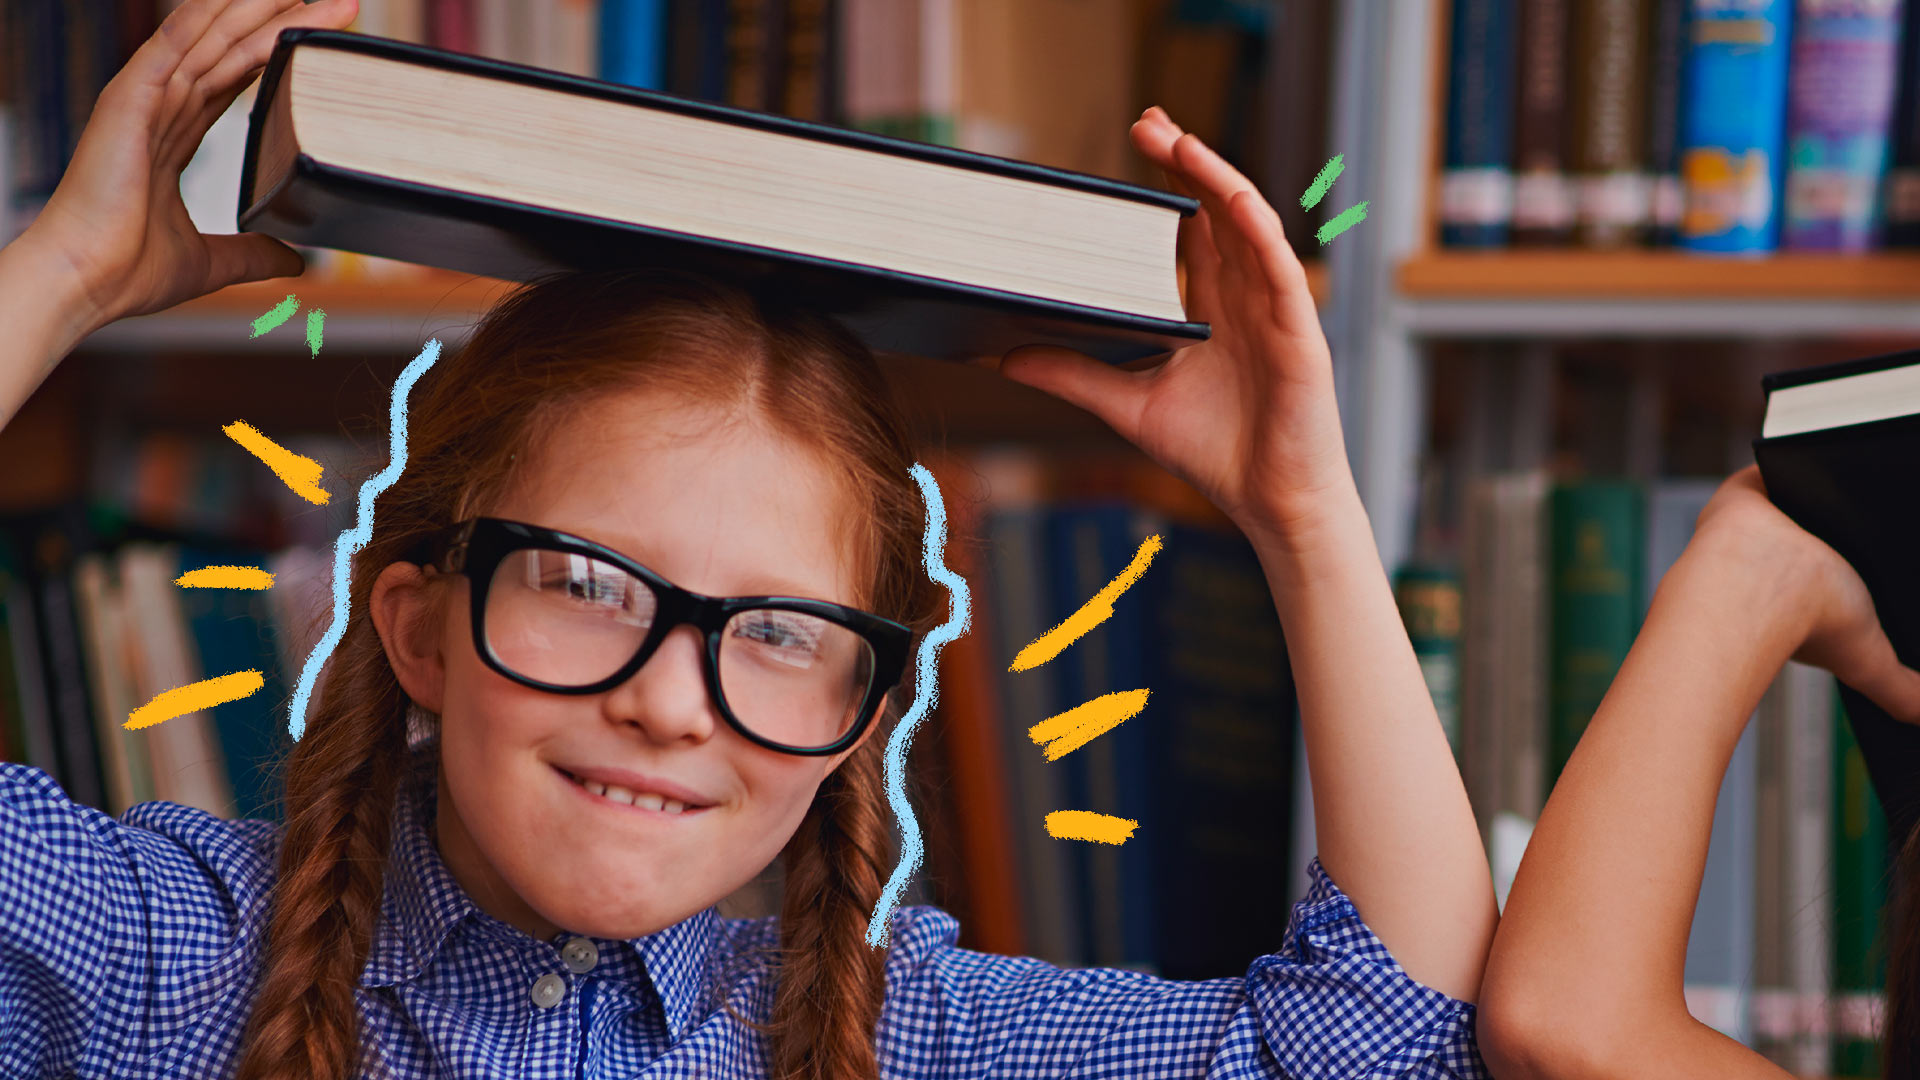 Imagem de uma menina ruiva, com duas tranças laterais, usando óculos e camisa xadrez azul, equilibrando um livro na cabeça.